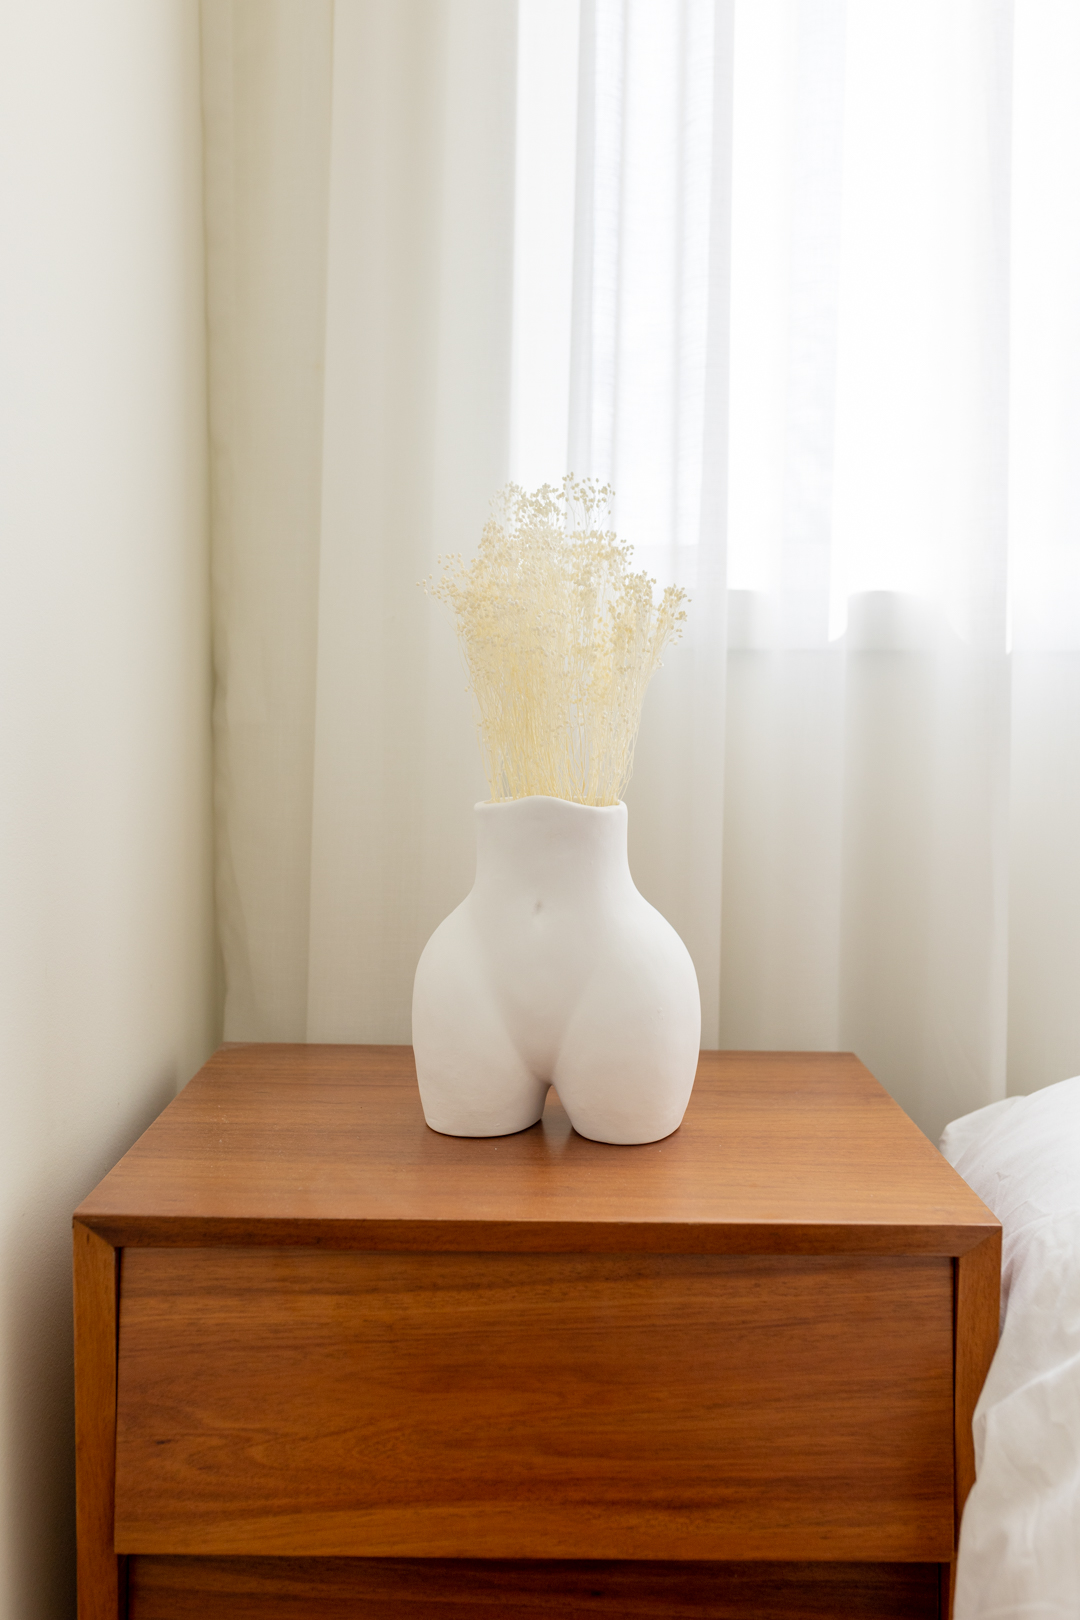 Vase en céramique nude mini blanc